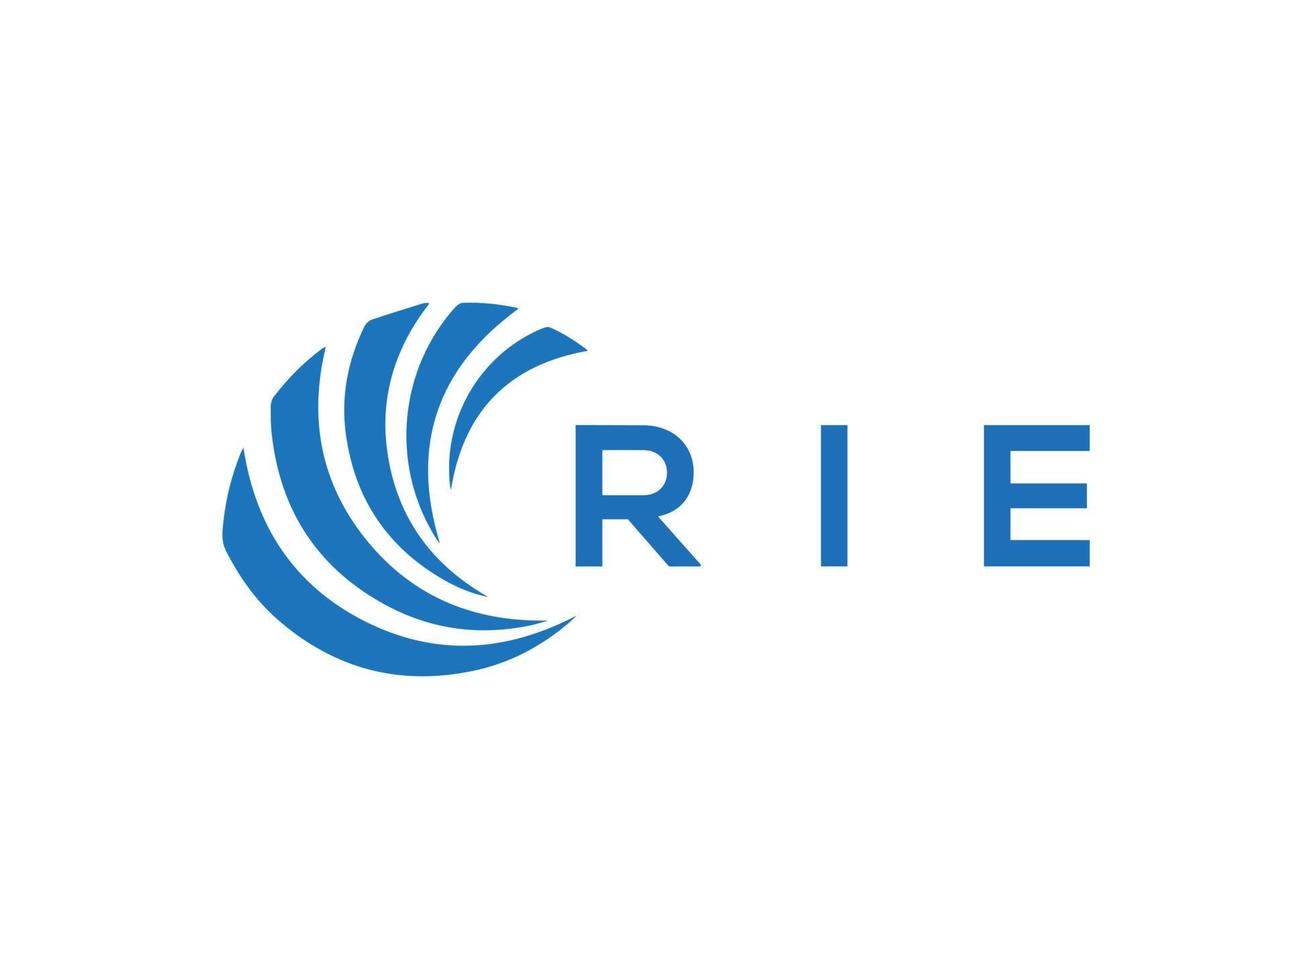 RIE letter logo design on white background. RIE creative circle letter logo concept. RIE letter design. vector